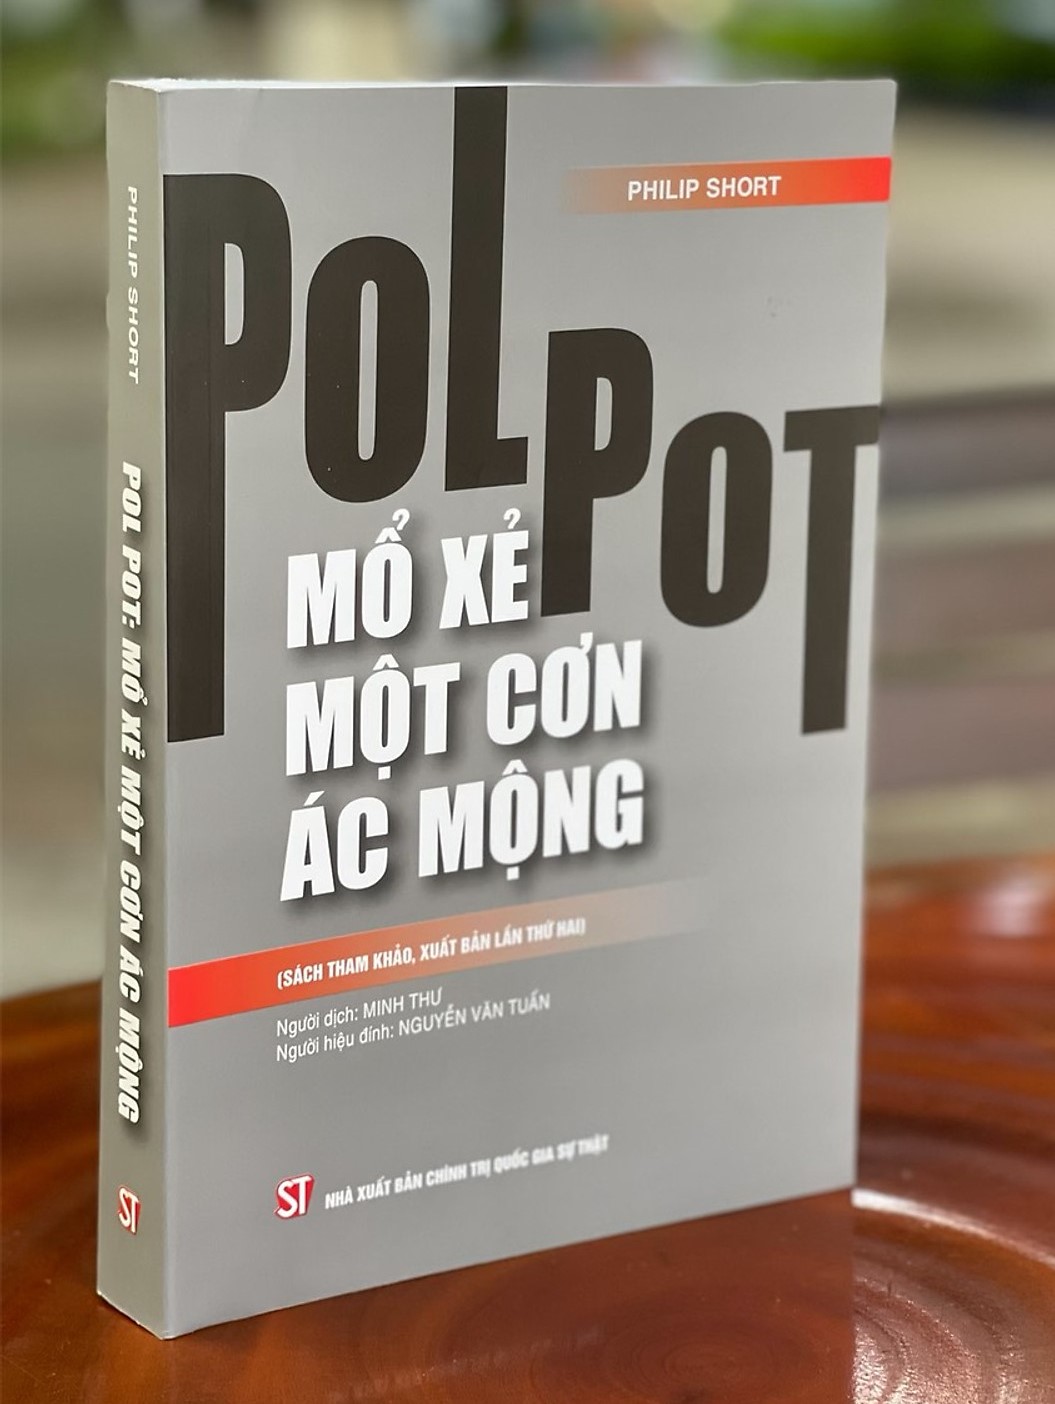 Pol Pot: Mổ xẻ một cơn ác mộng